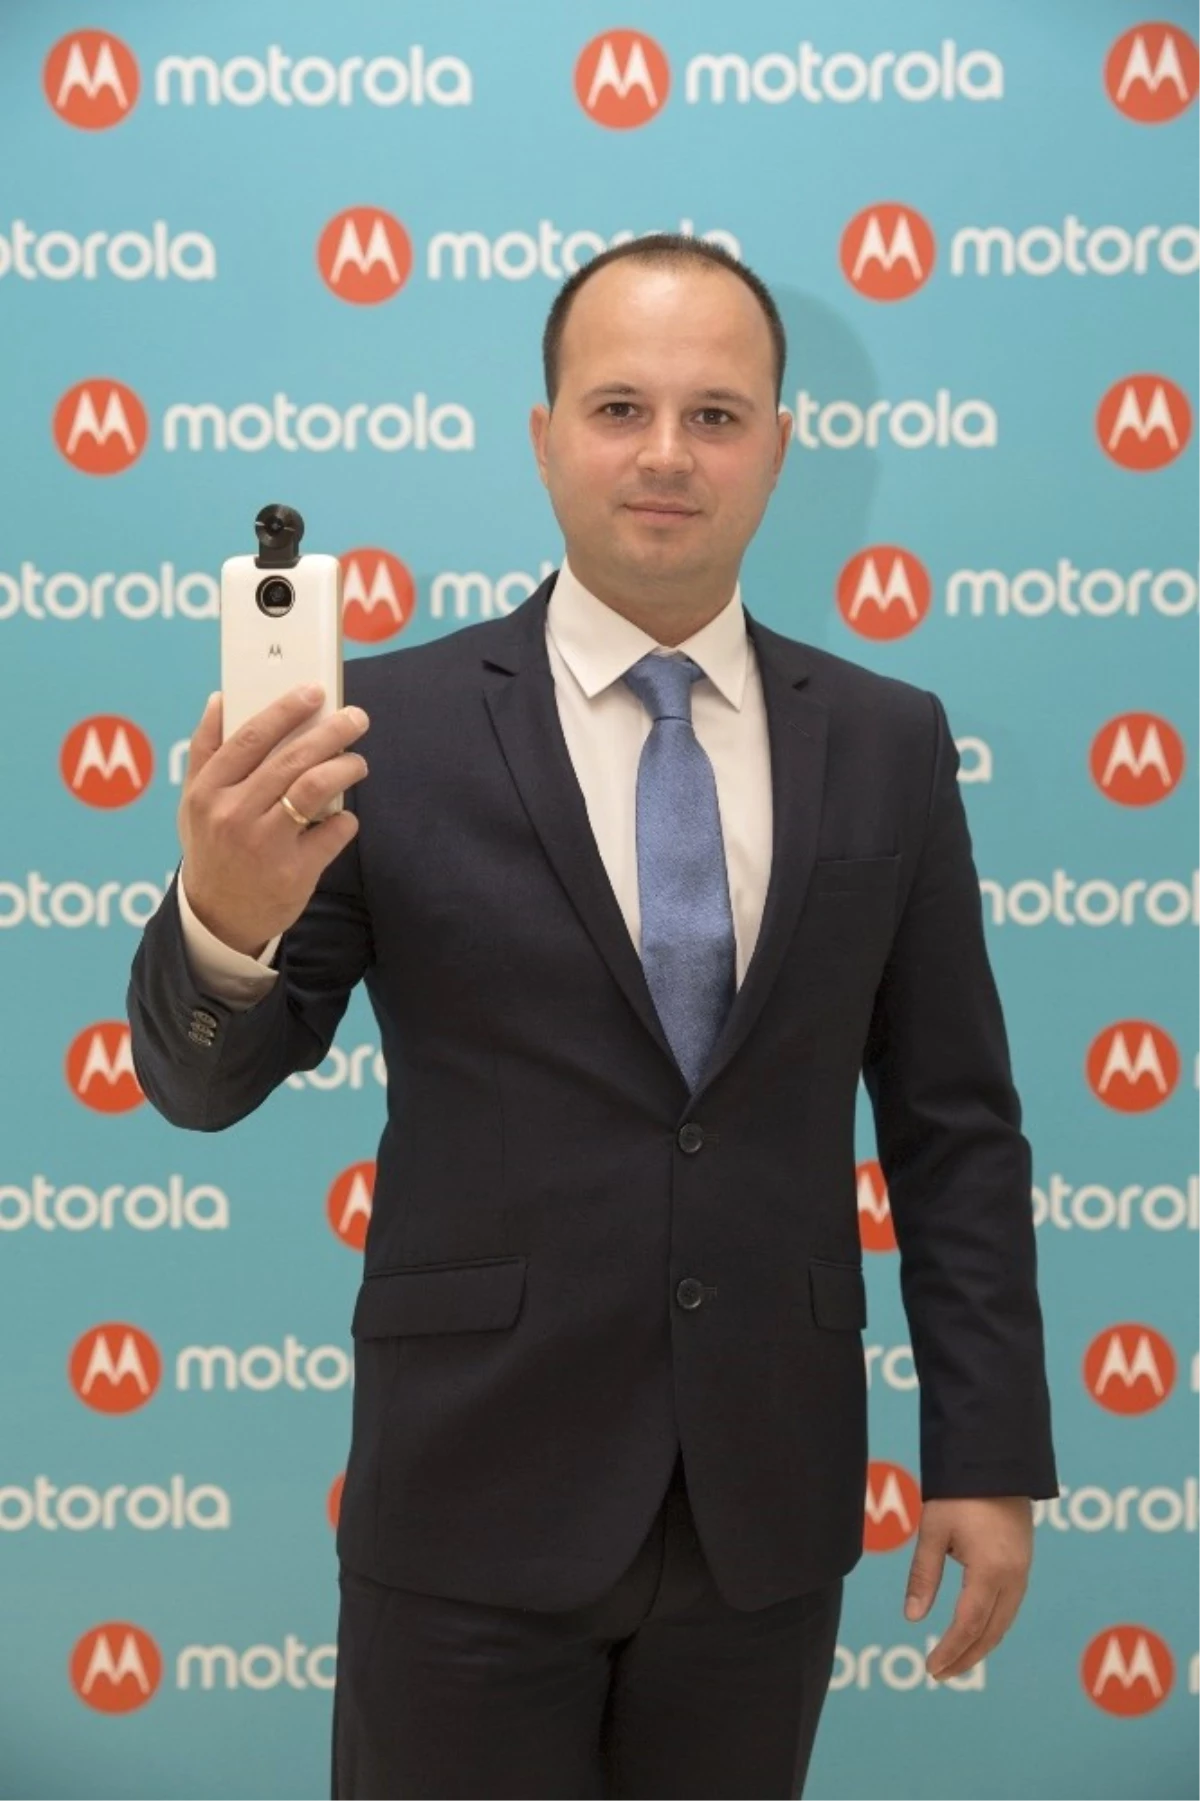 Motorola Yeni Modlarını Tanıttı